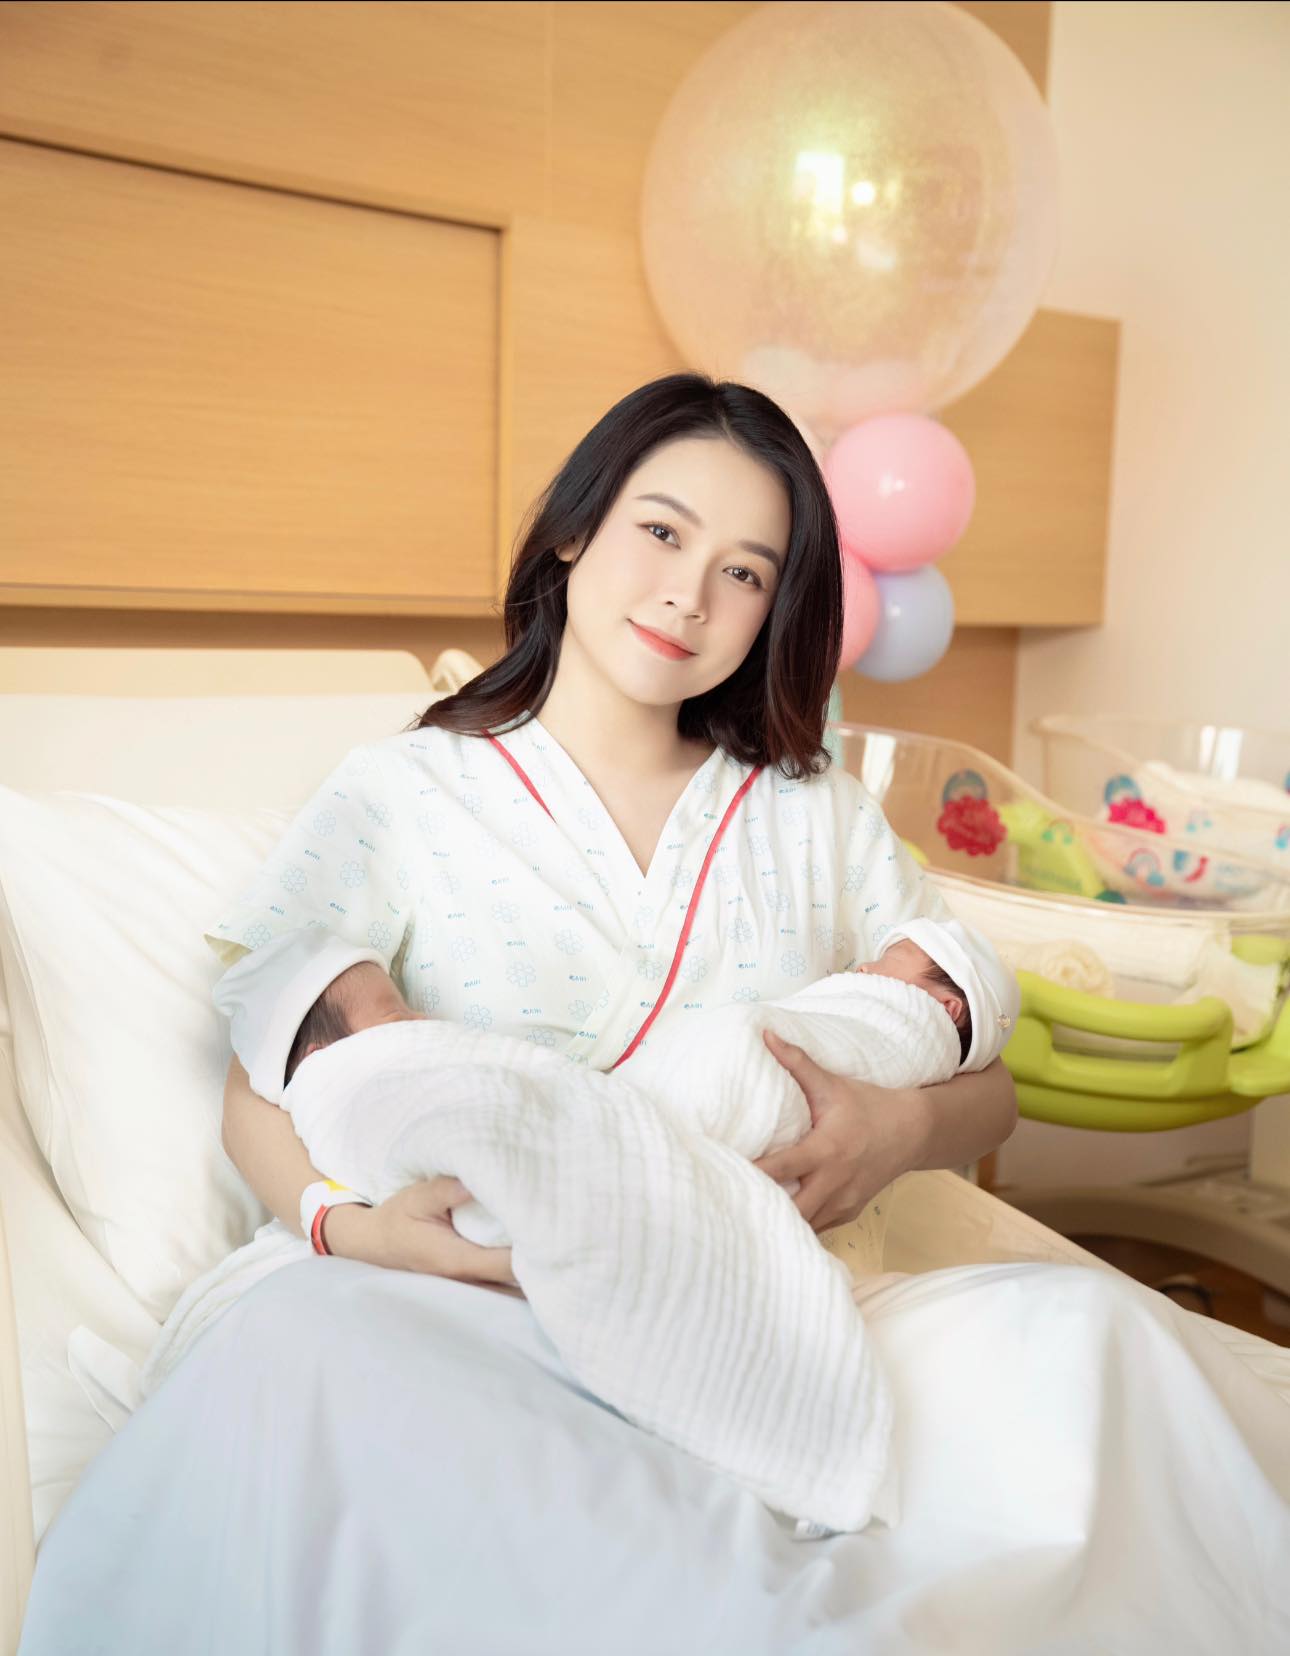 5 cặp sao Việt sinh đôi 1 trai 1 gái, đa phần đều áp dụng phương pháp này để sinh con - ảnh 1